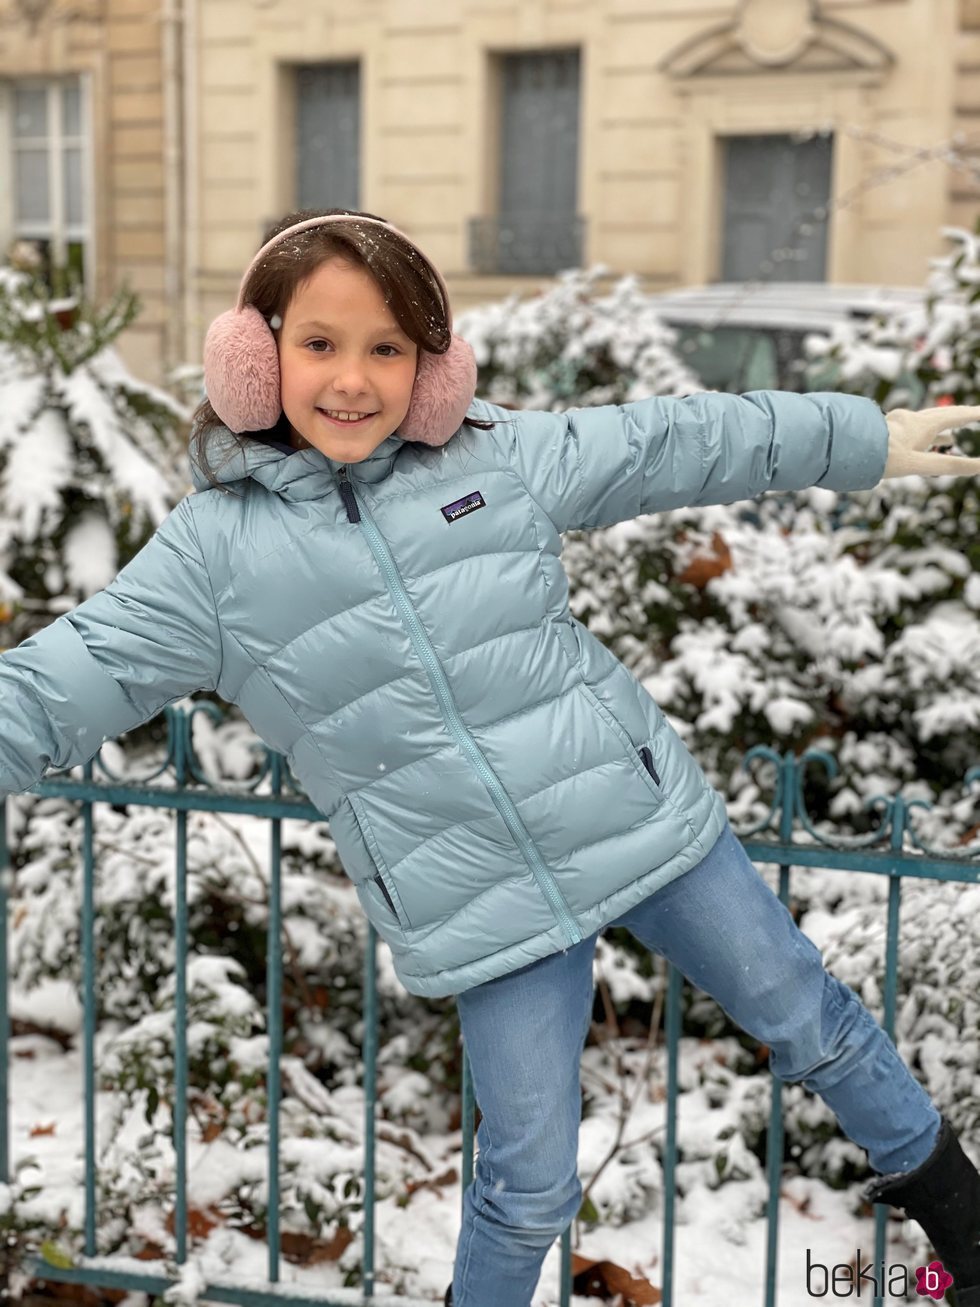 Athena de Dinamarca, muy sonriente en la nieve por su noveno cumpleaños